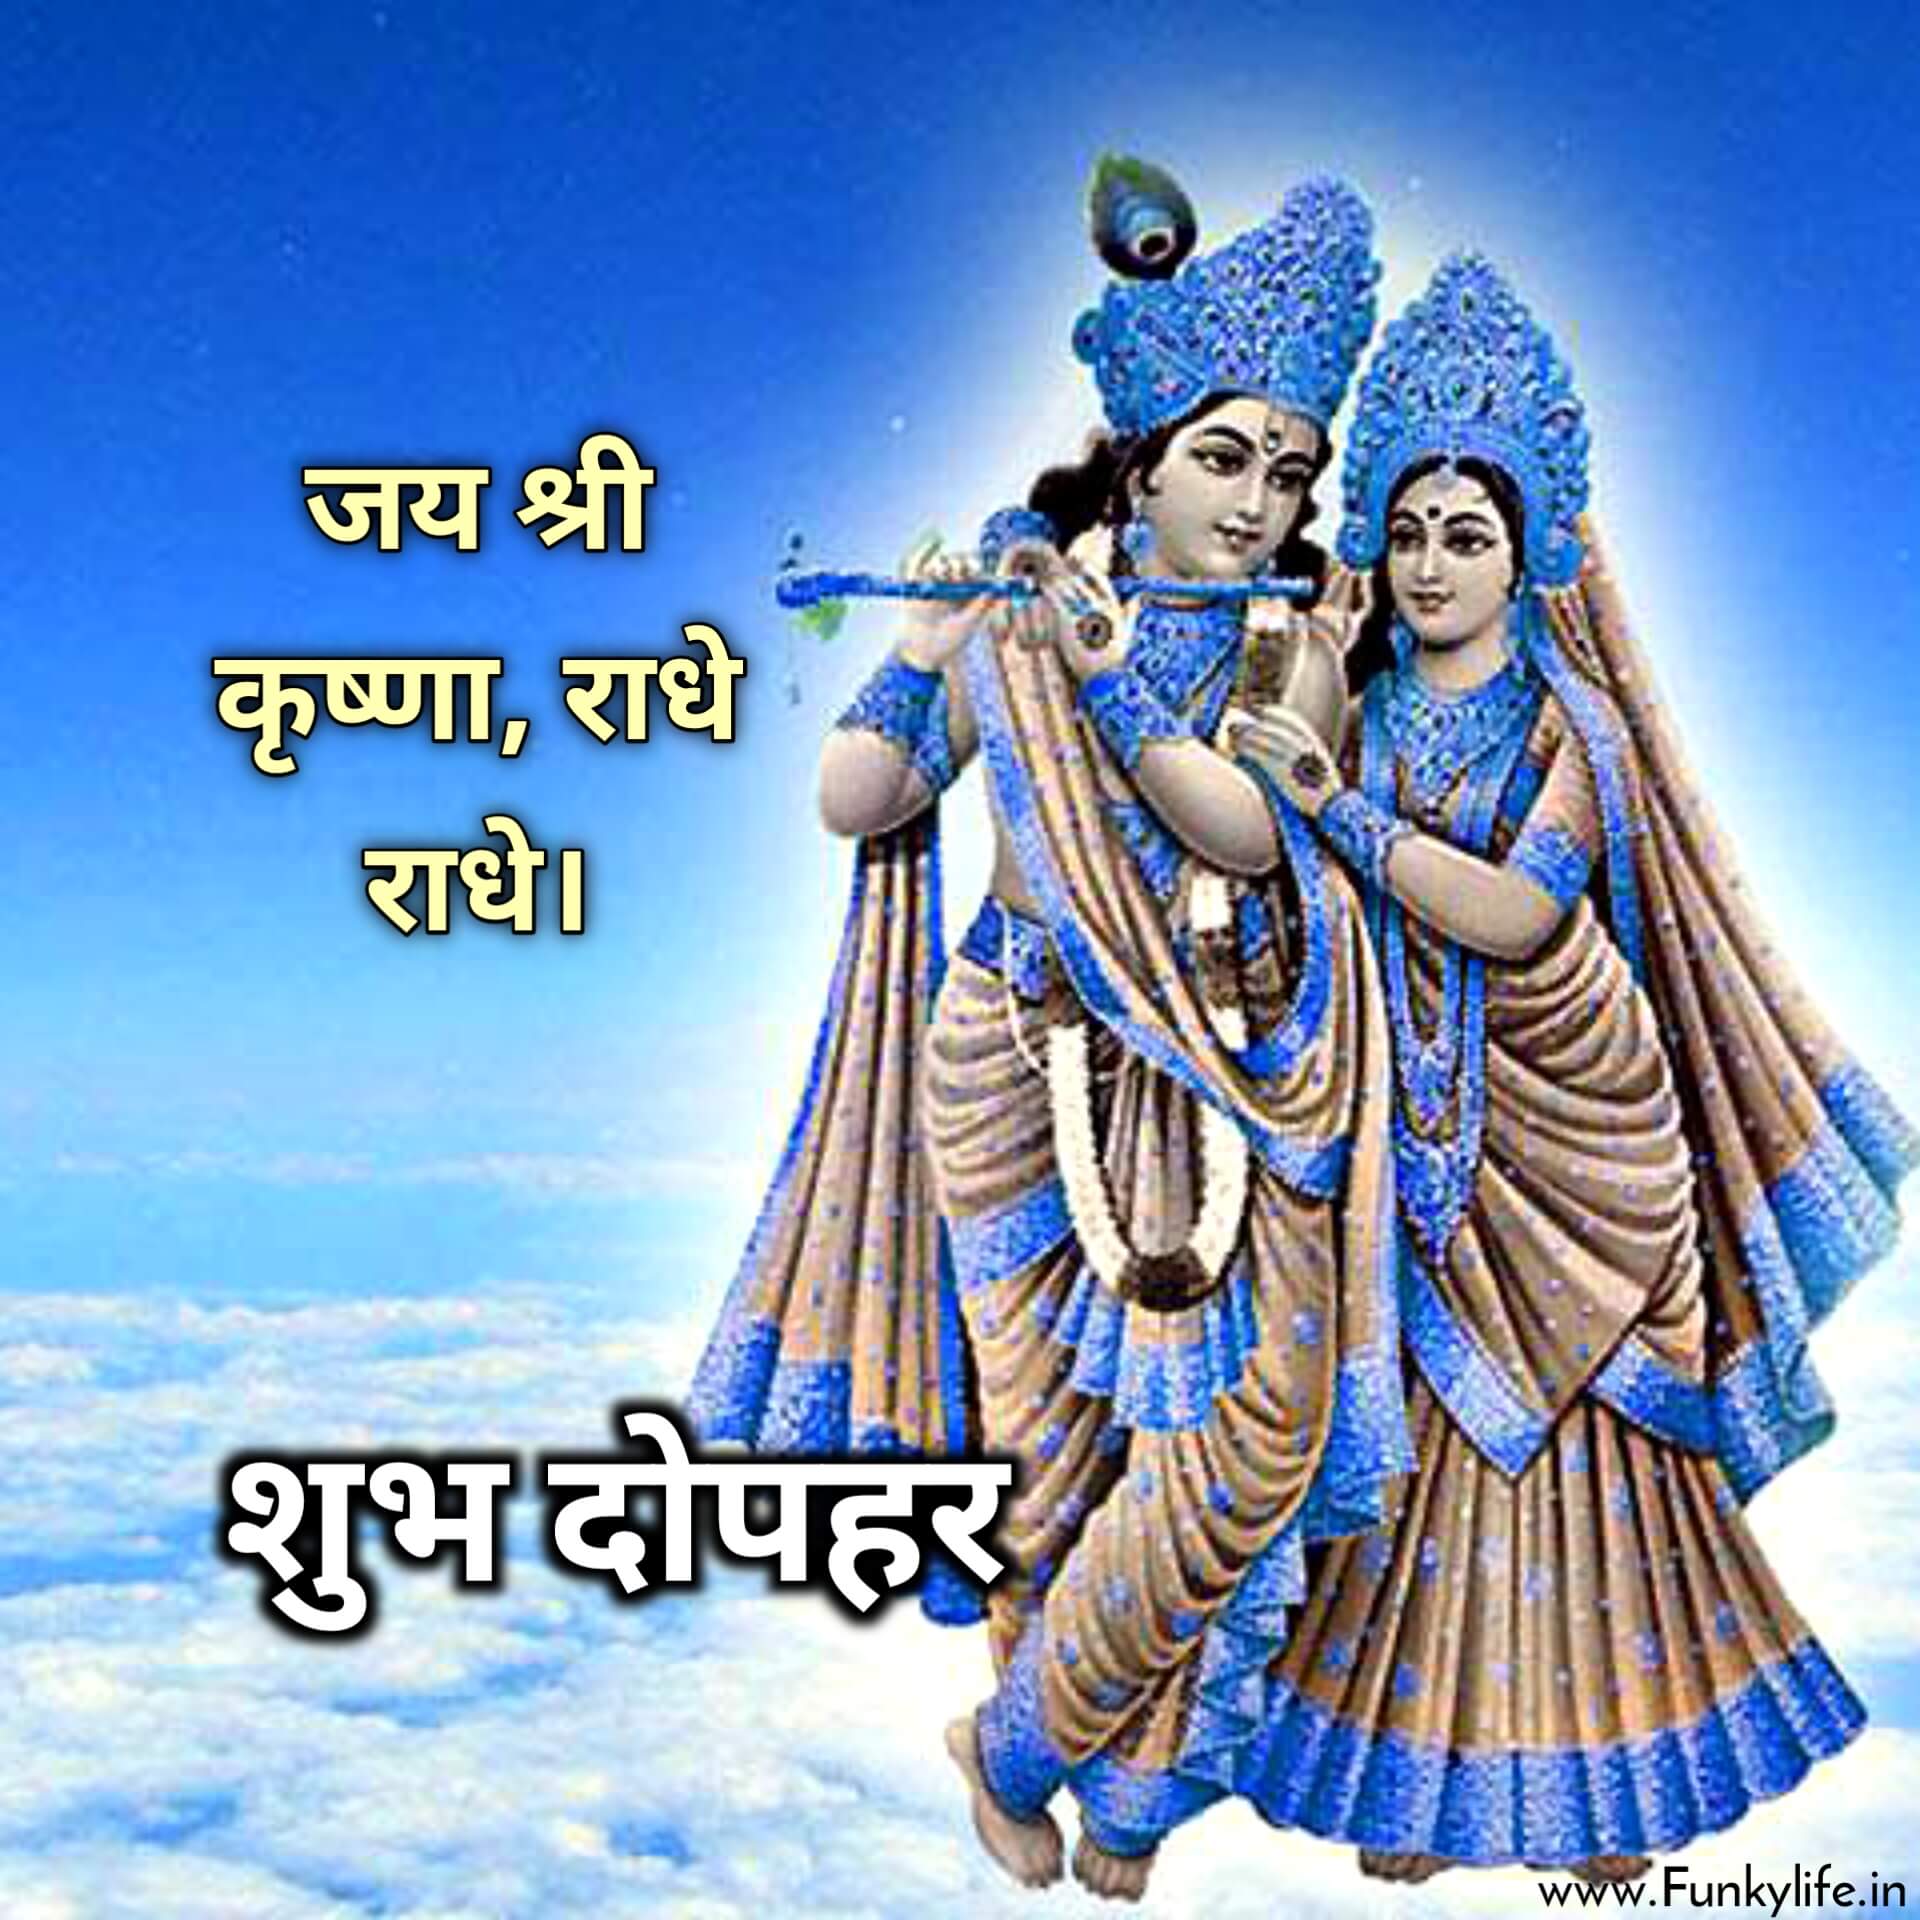 Shri Radhe Radhe Shubh Dopahar Image in Hindi